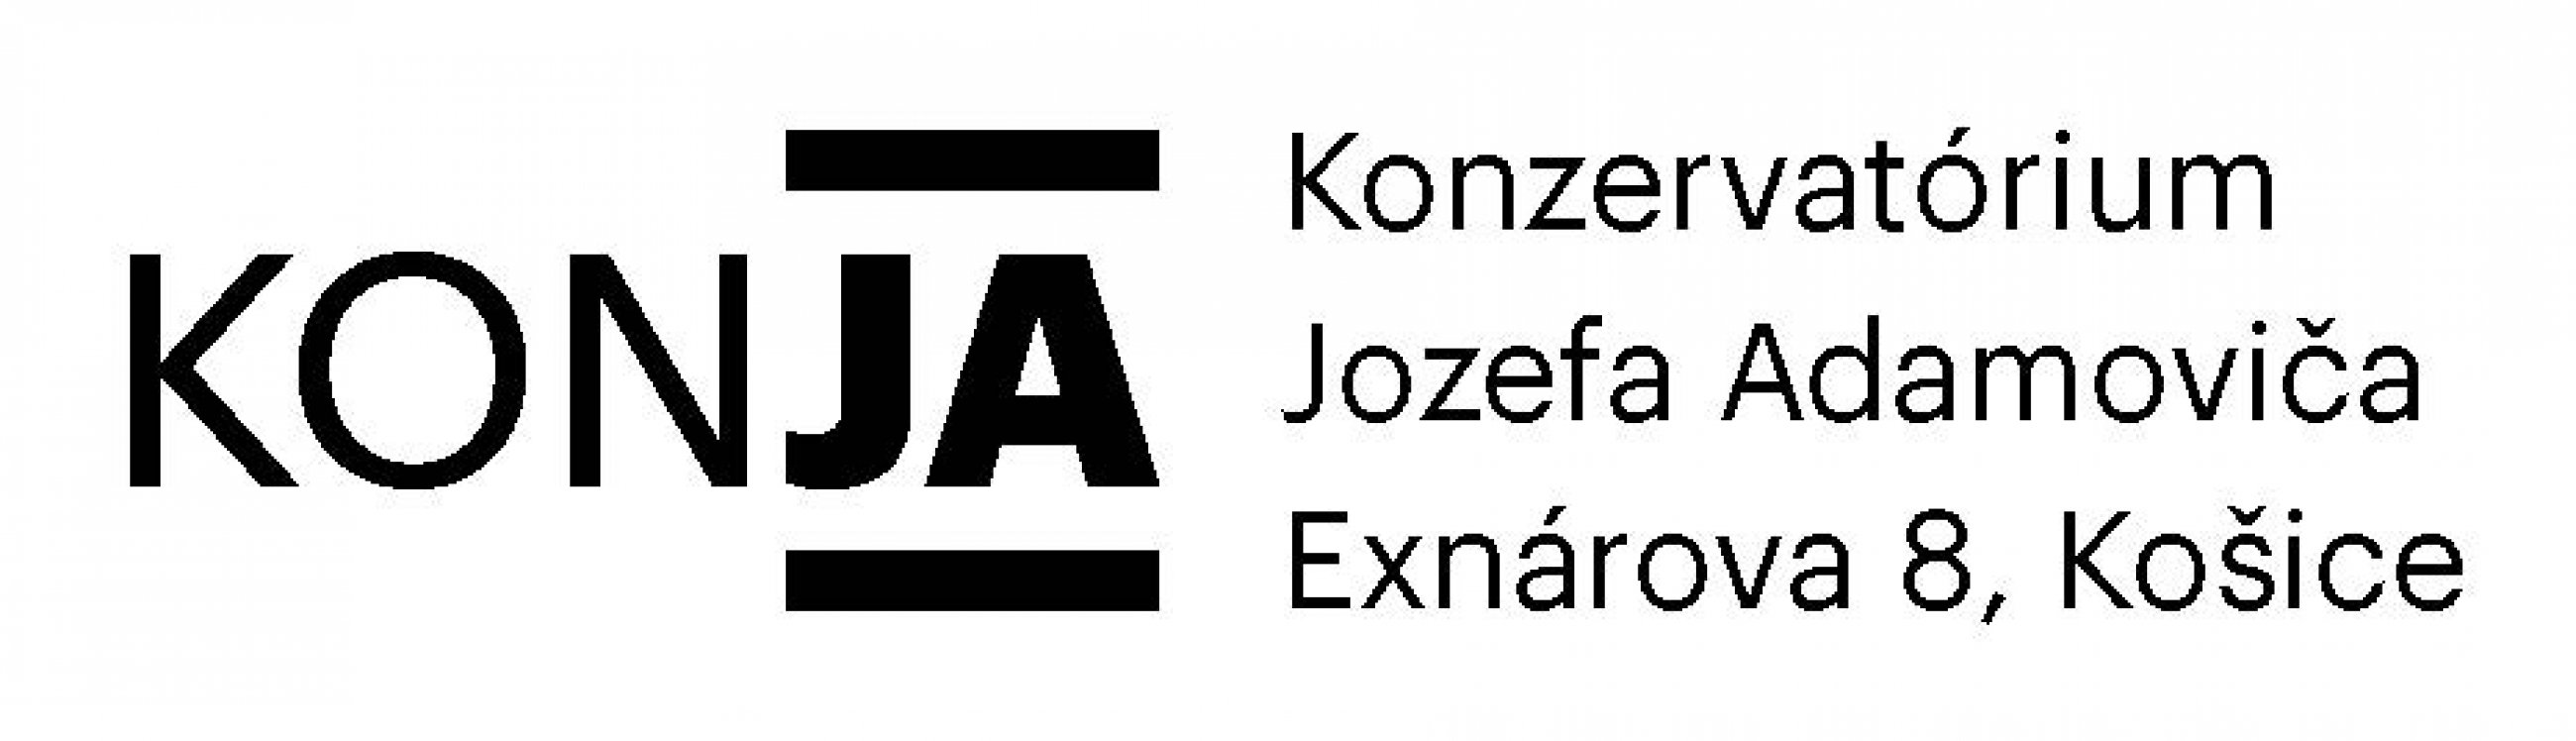 KONJA logo uprava 002 Strana 3